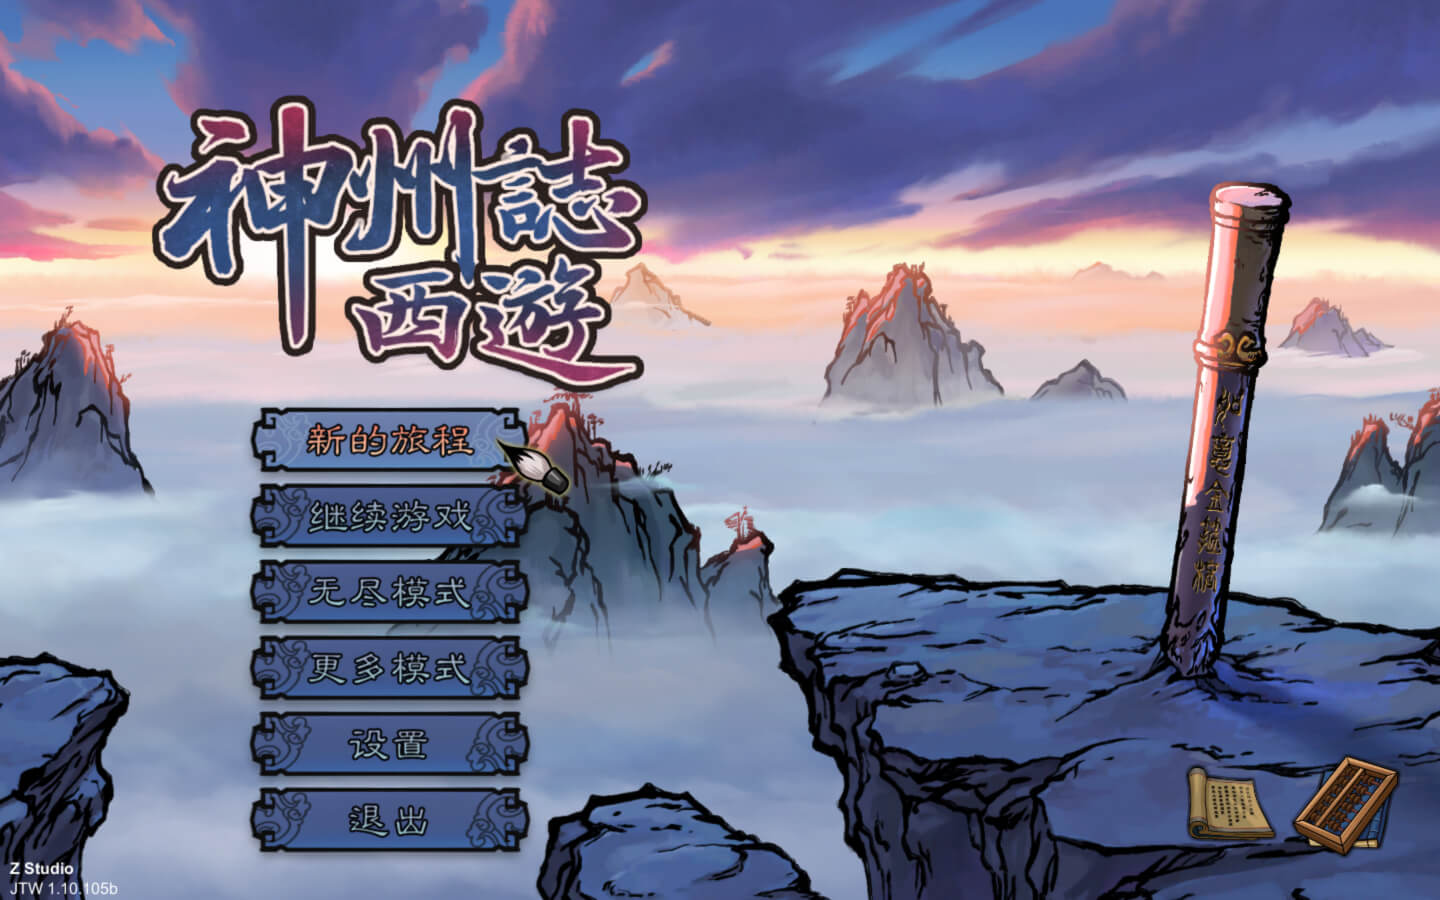 神州志西游 for Mac v1.12.34b Divinity Chronicles: Journey to the West 中文原生版 苹果电脑